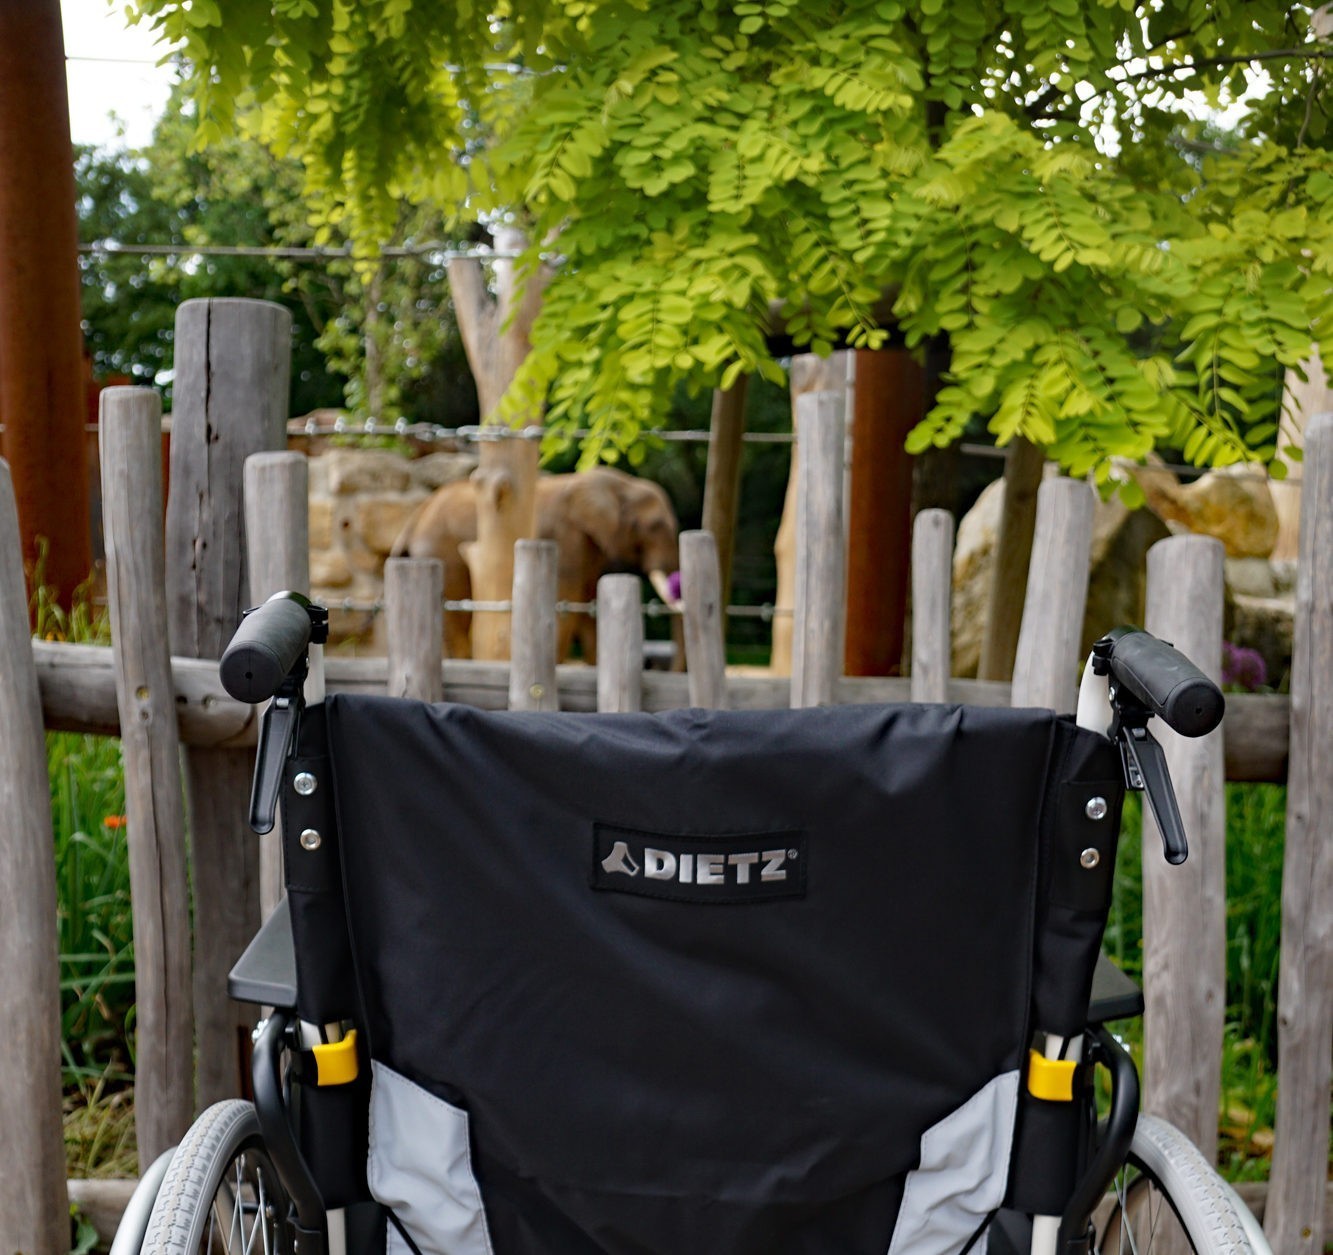 Invalidní vozík před expozicí slonů.